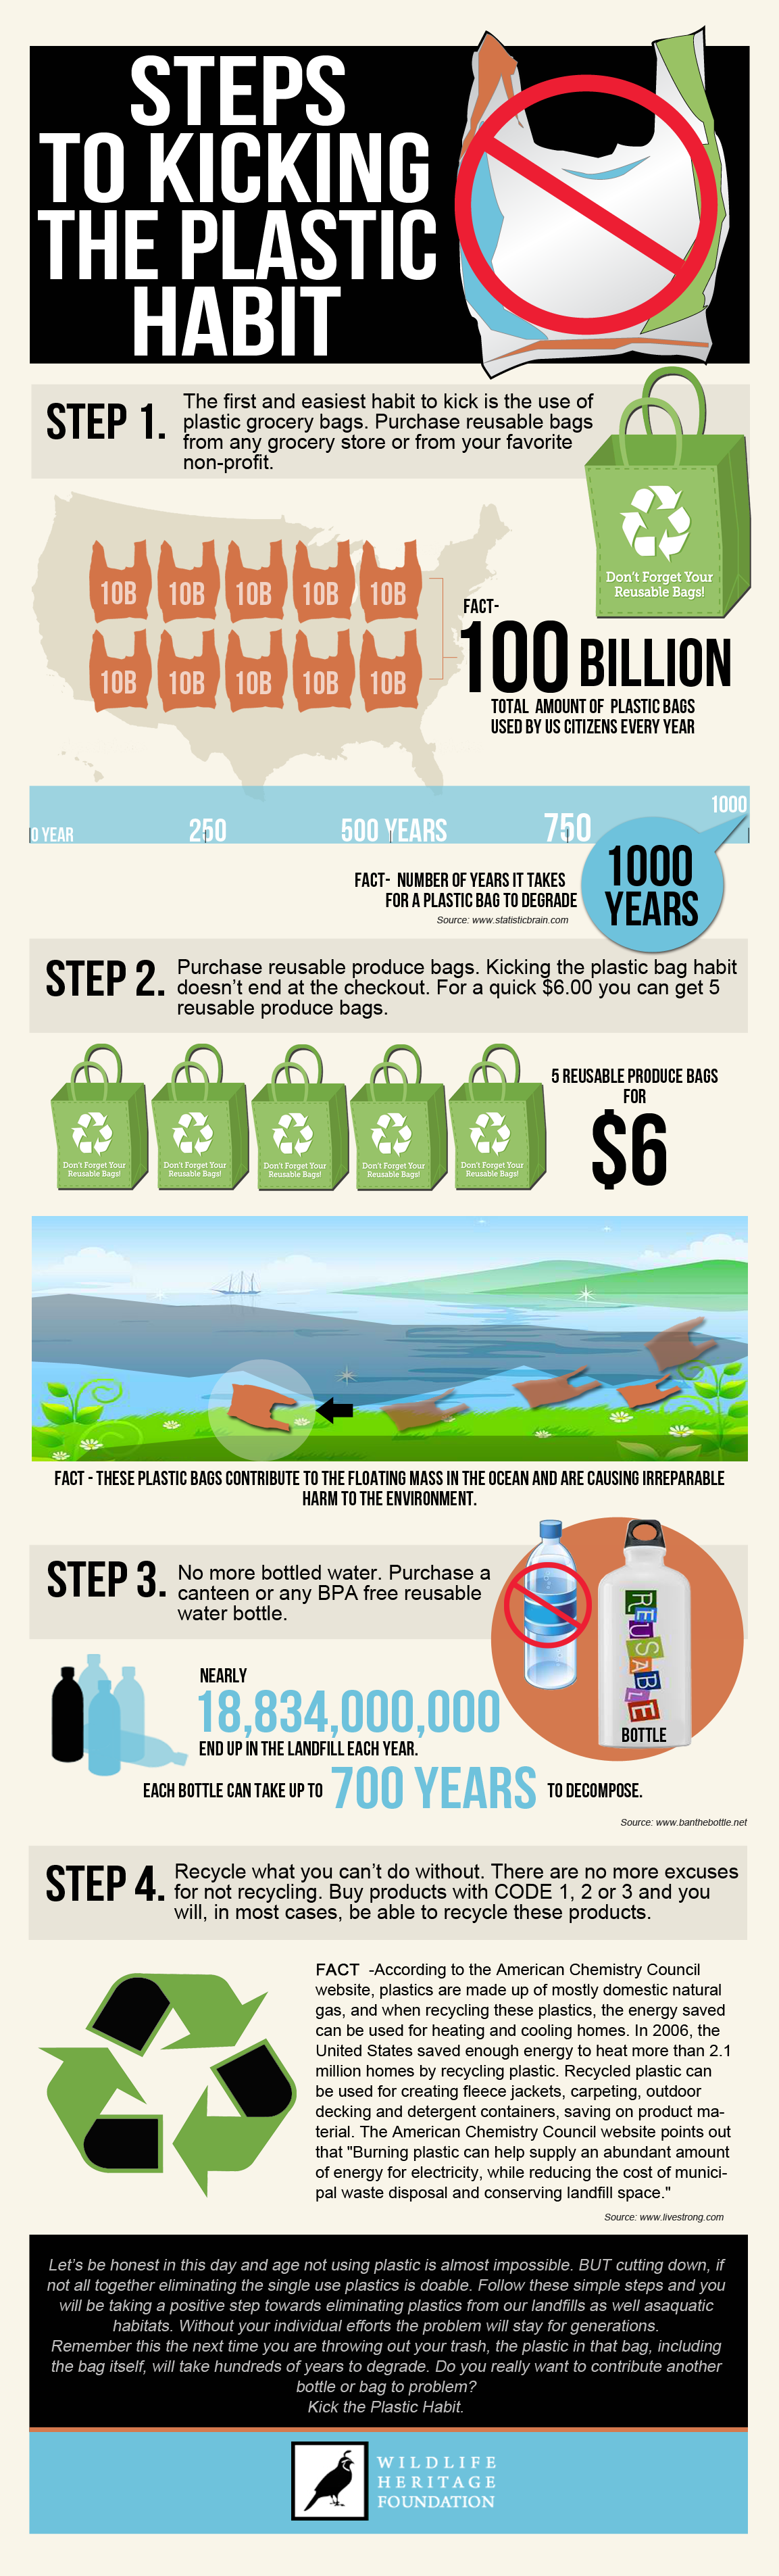 Kick Plastic Habit infographic